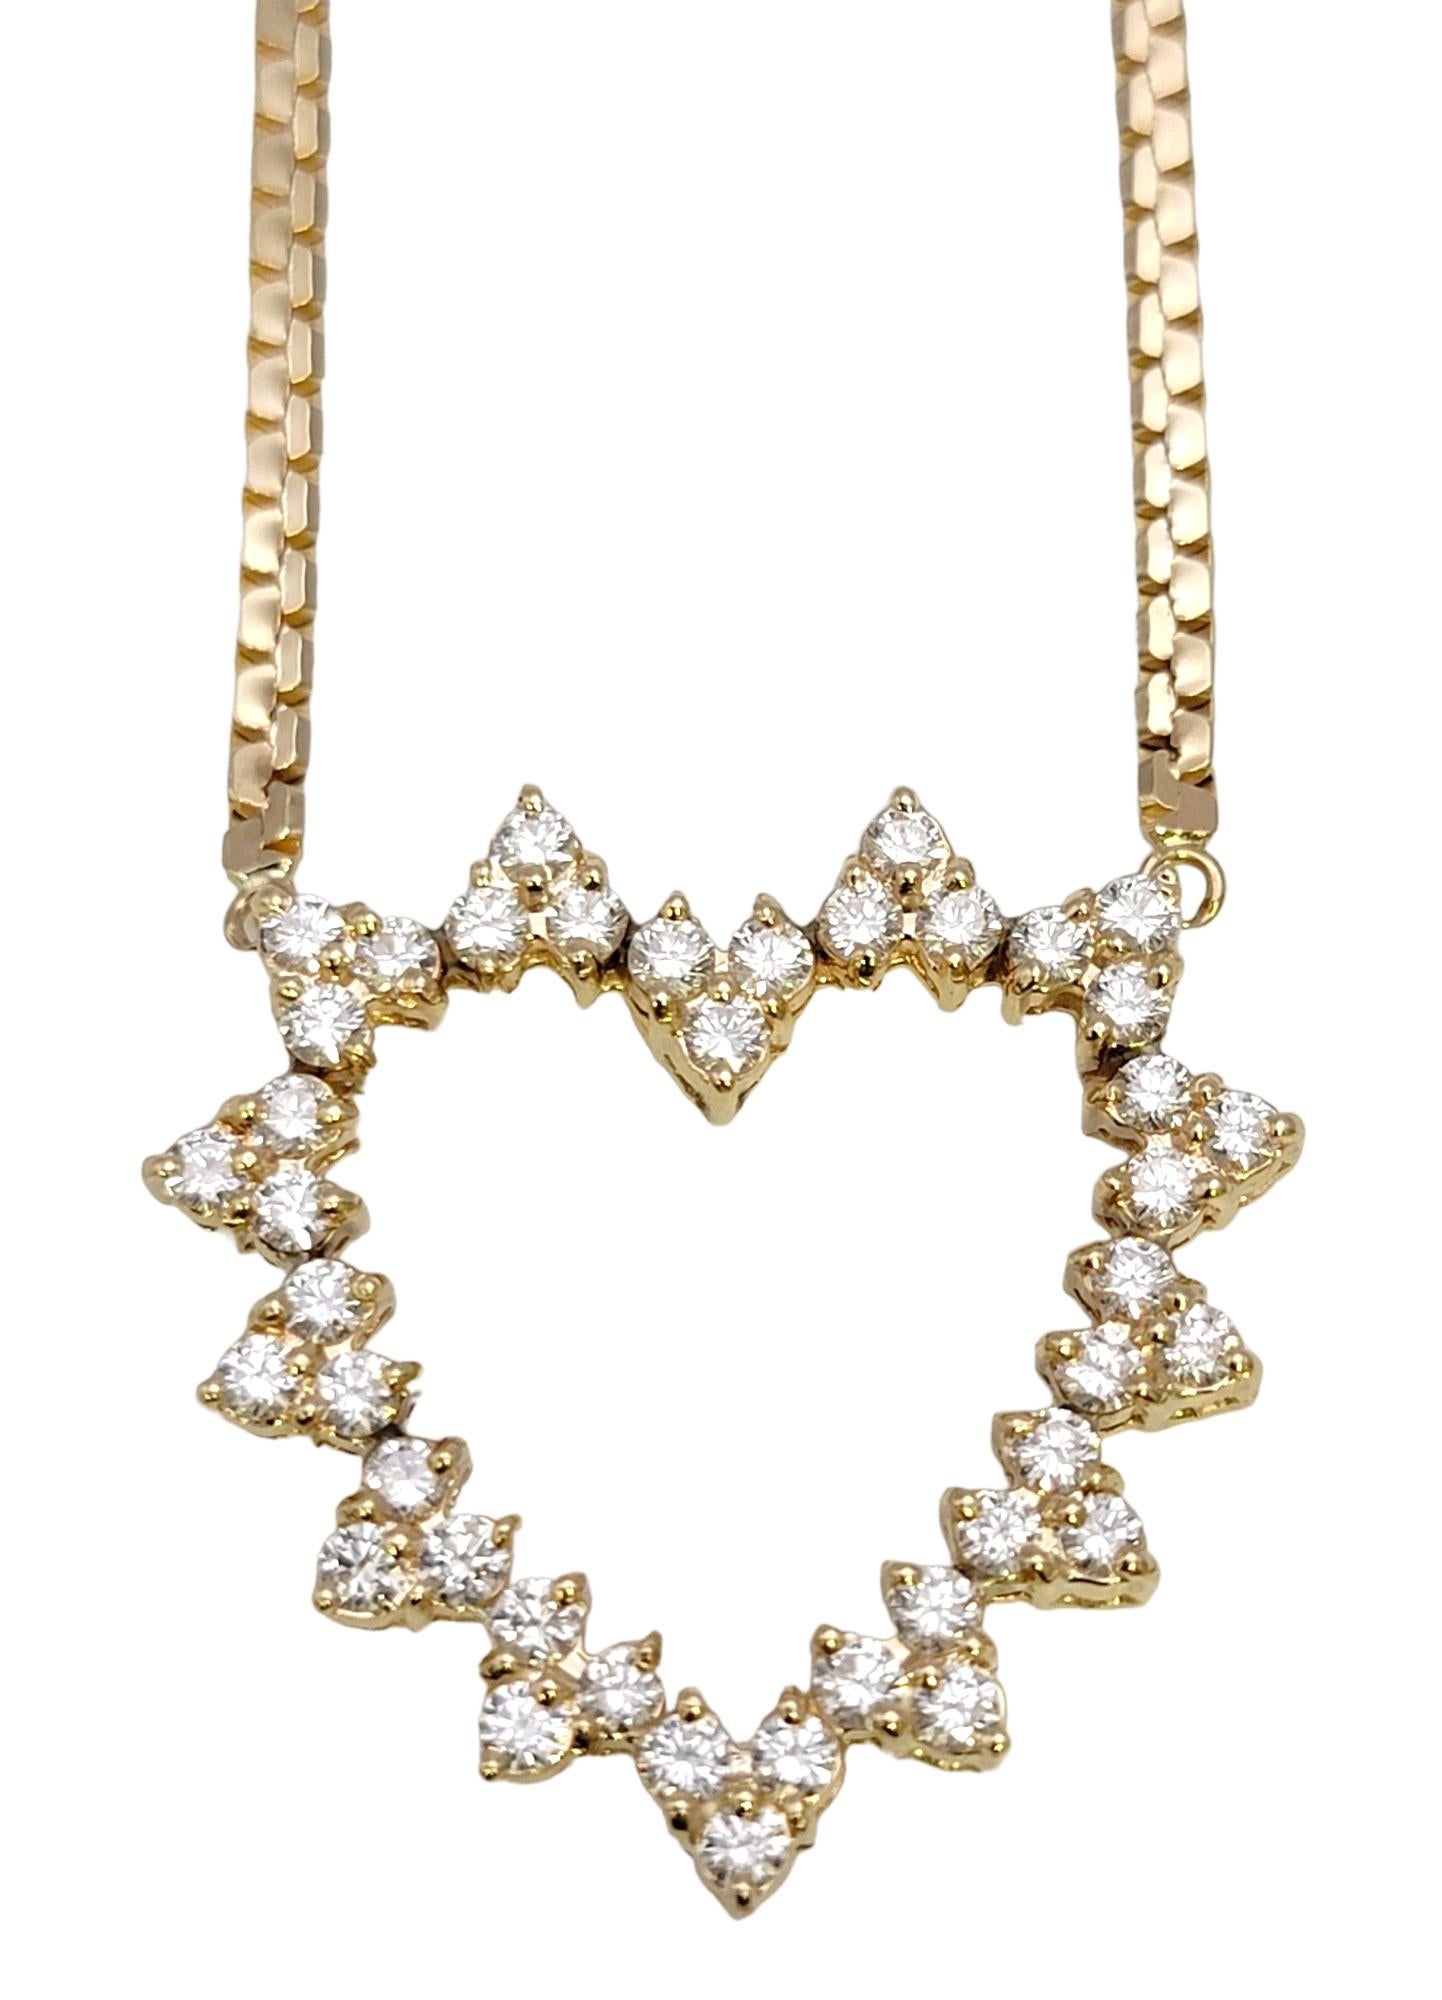 Voici un exquis collier pendentif à cœur ouvert en diamant de J. Eleg, une pièce véritablement intemporelle réalisée avec une élégance et une précision extrêmes. Ce pendentif dégage une lueur chaude et rayonnante, symbolisant l'amour et l'affection